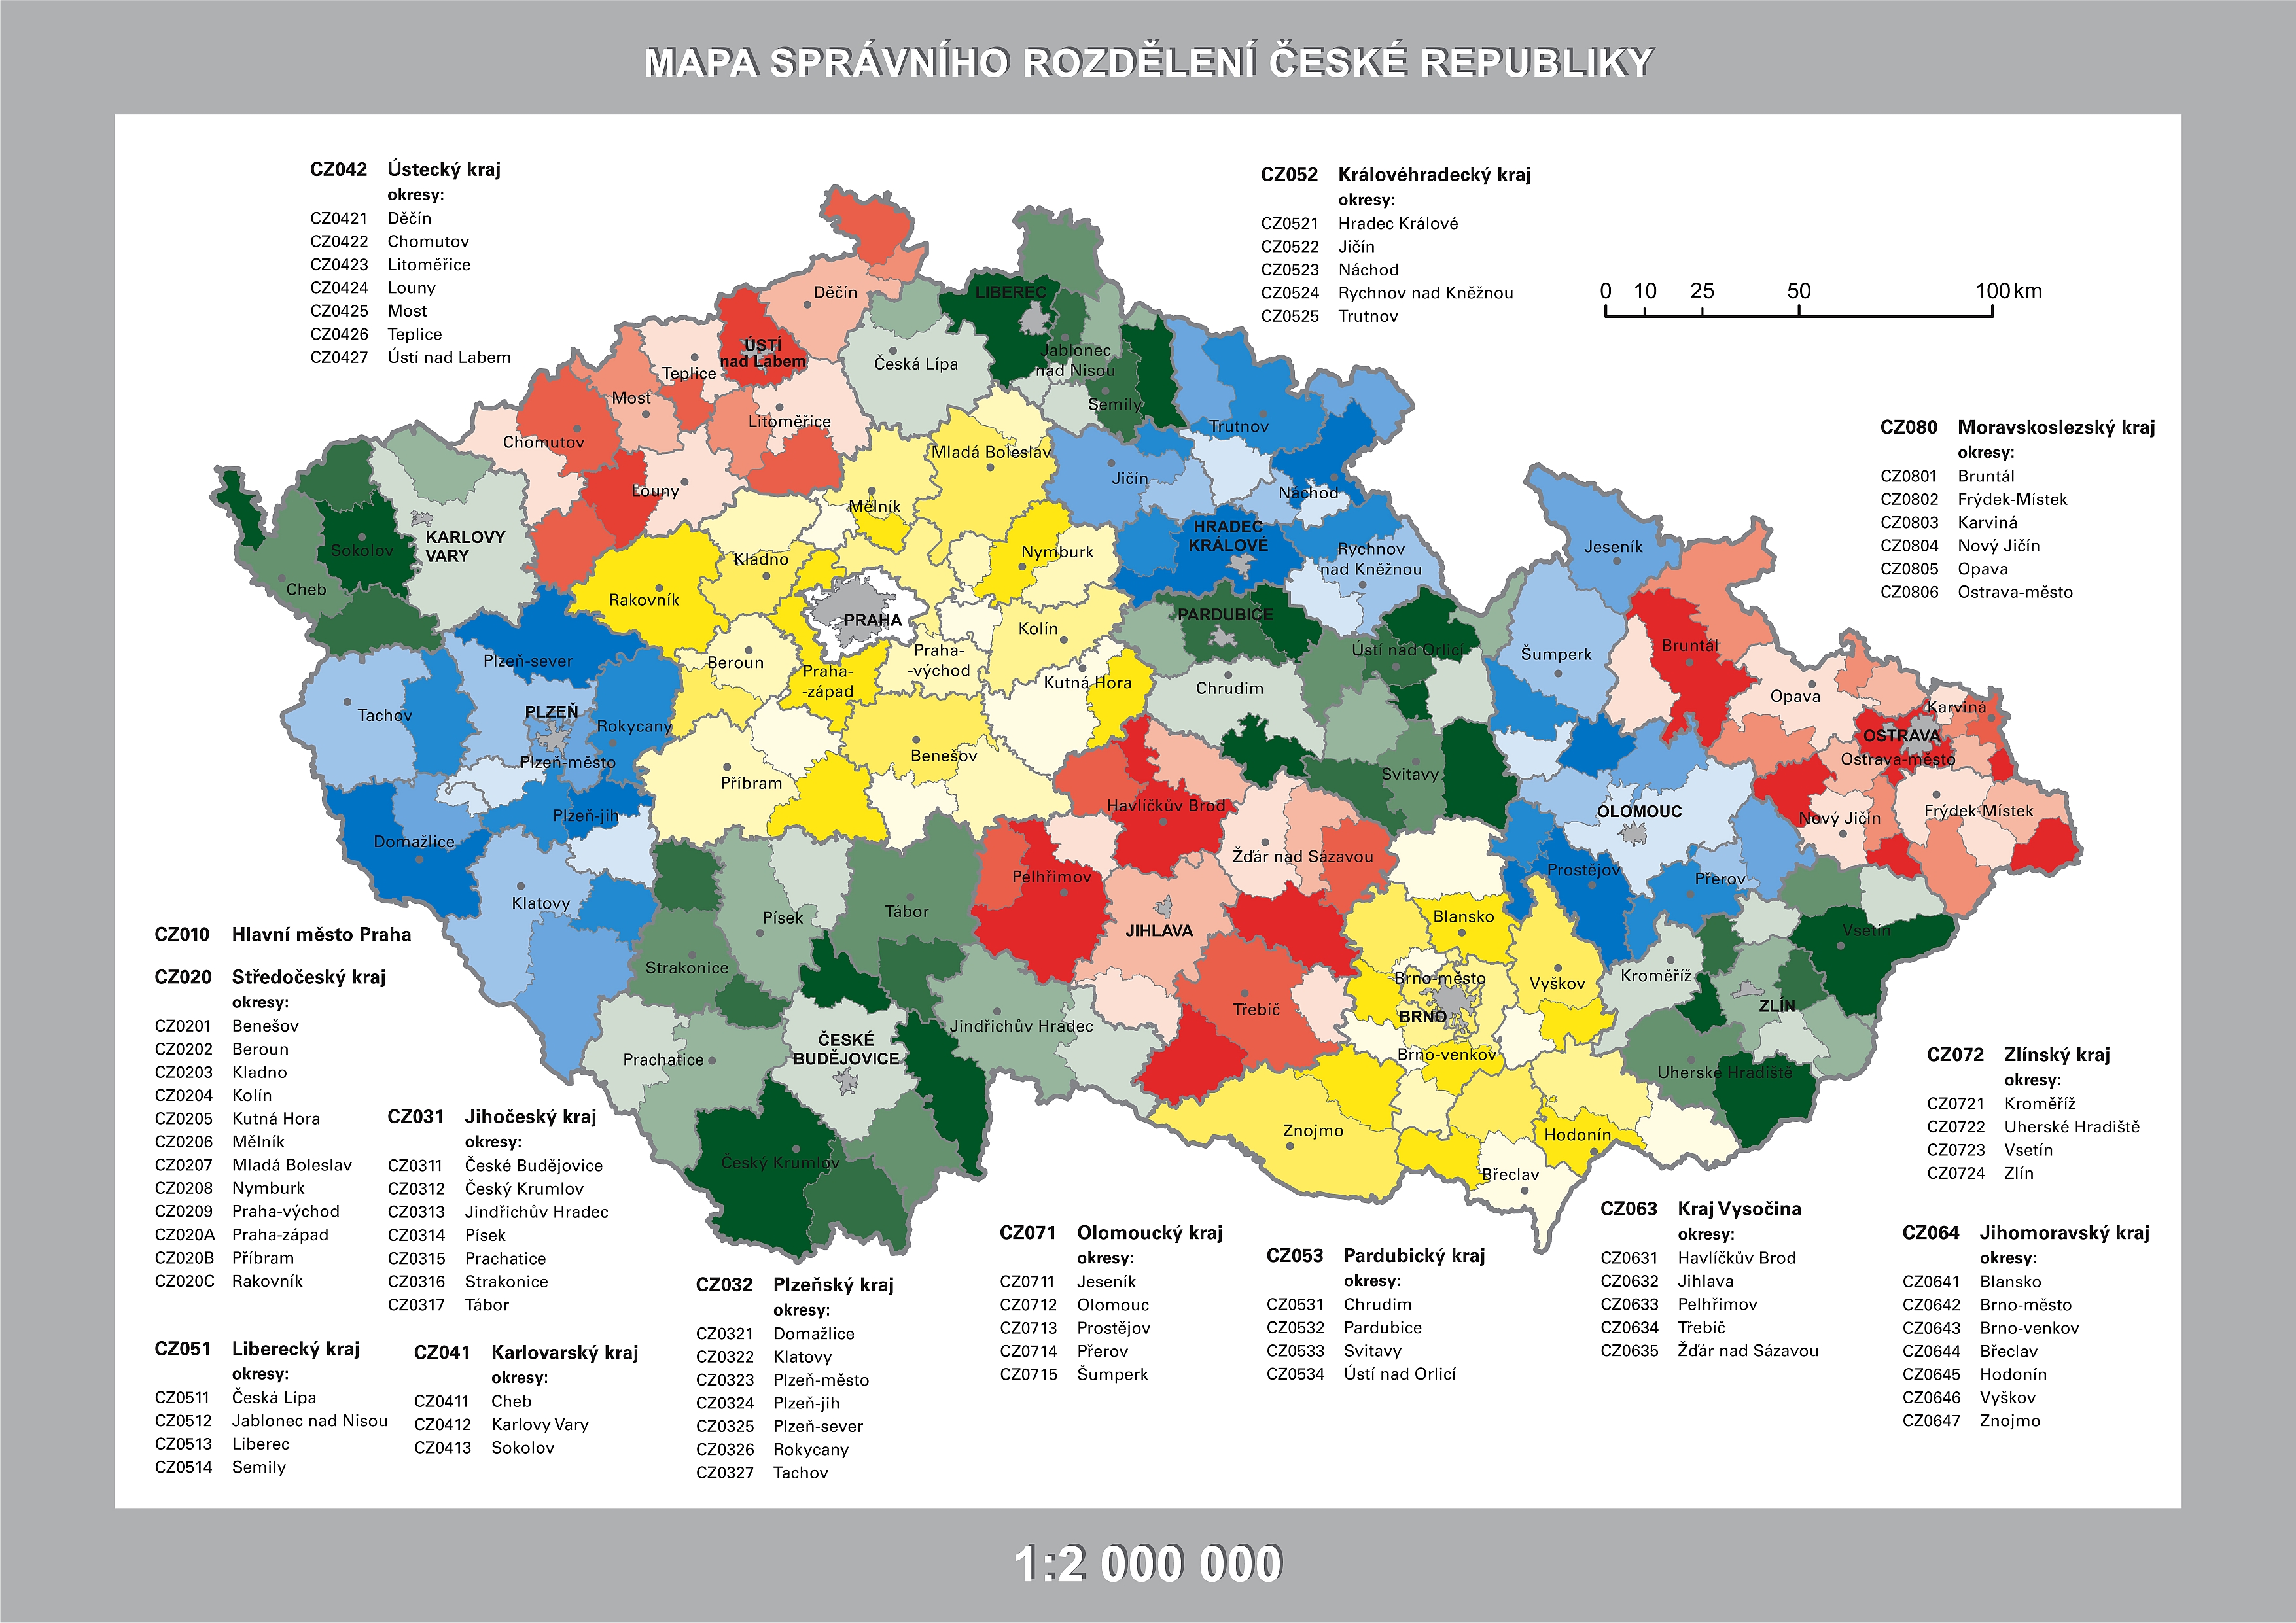 Mapa správního rozdělení ČR 1 : 2 000 000